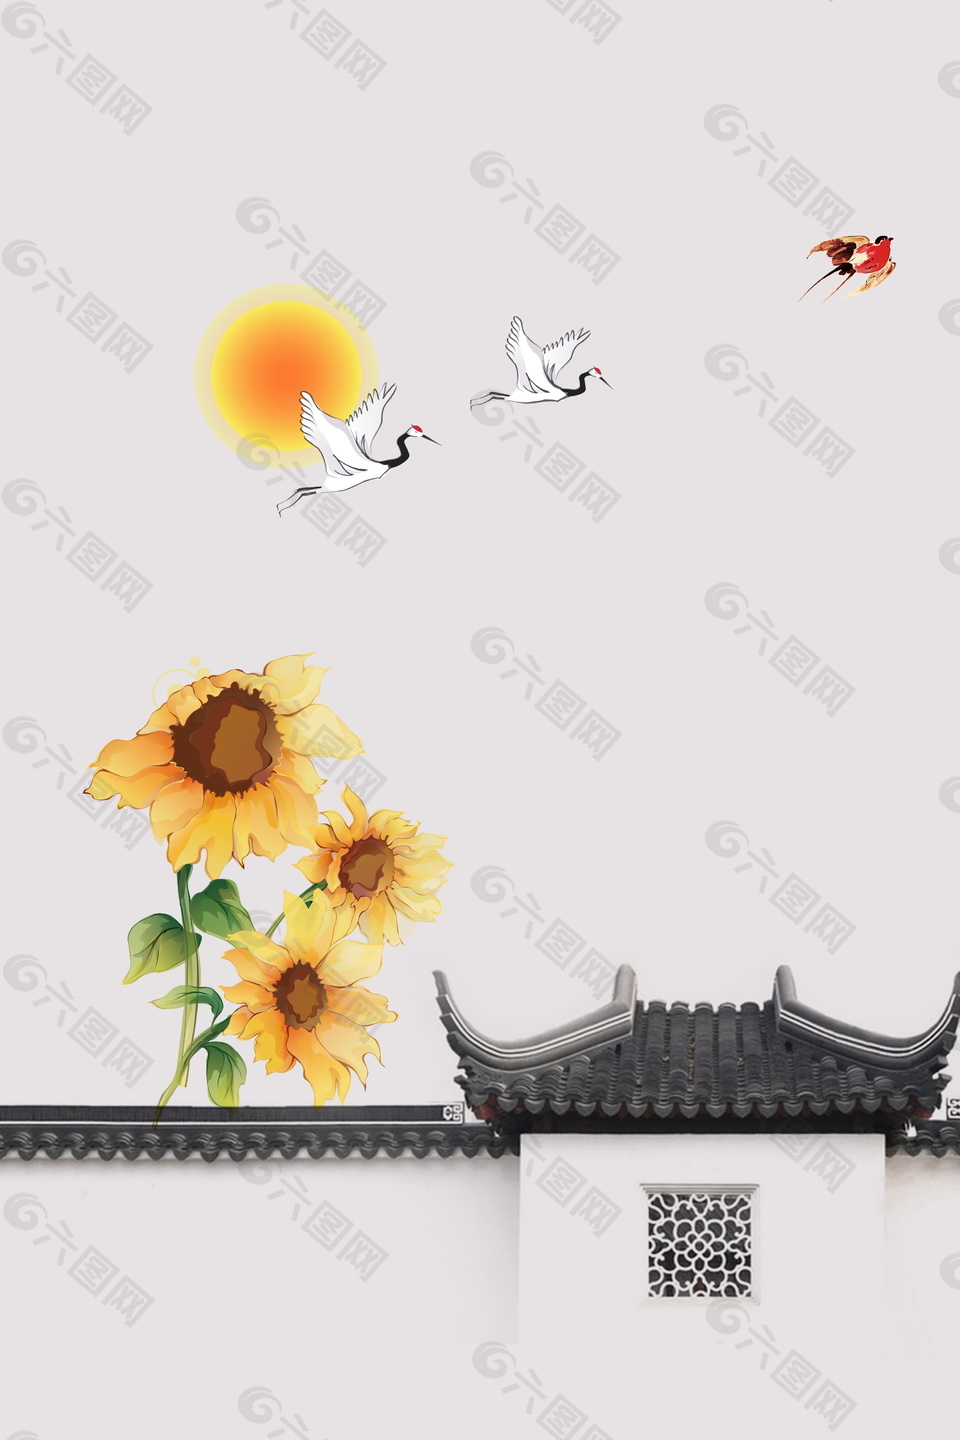 中国风彩绘向日葵屋檐海报素材